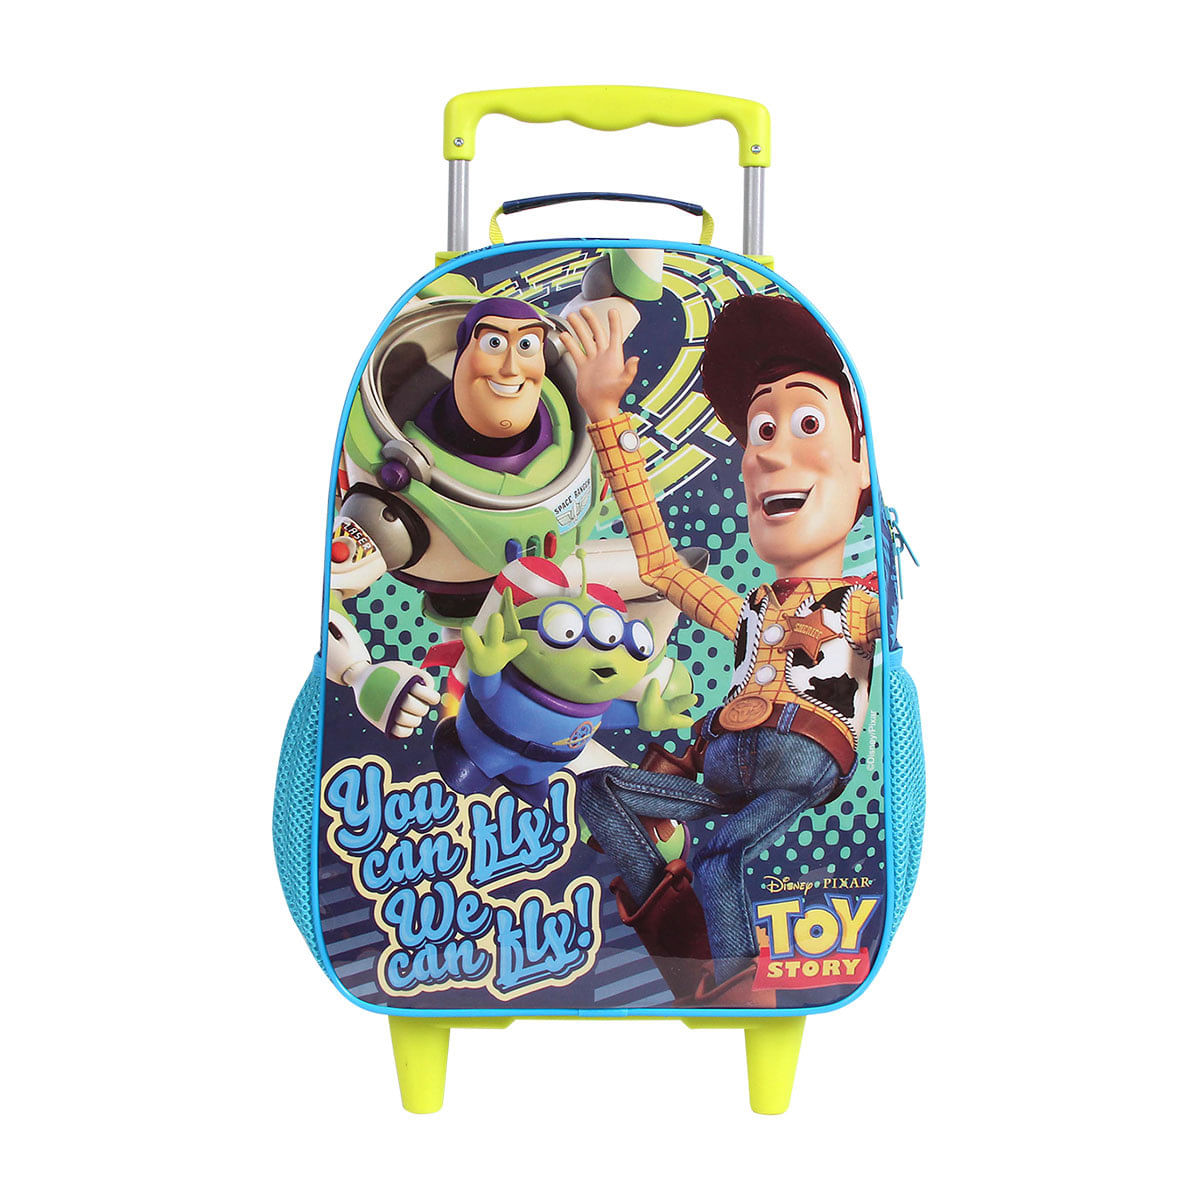 Jogo Toy Story 3 Xbox 360 Disney com o Melhor Preço é no Zoom